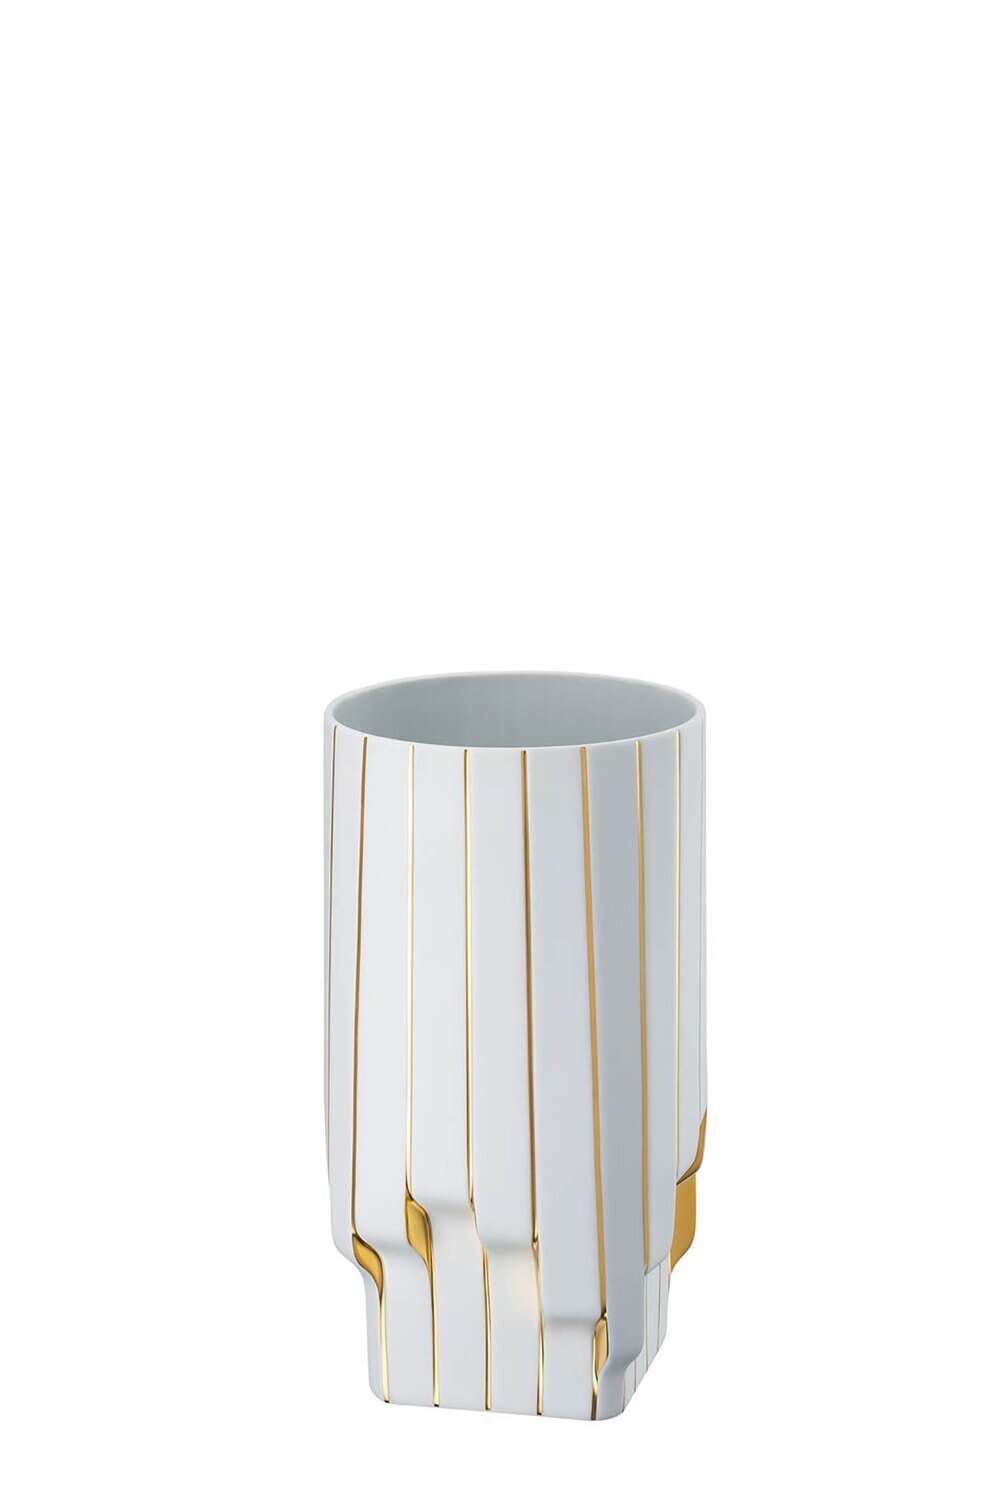 Rosenthal Strip White - Gold - Zaha Hadid Vase 11 3/4 Inchch